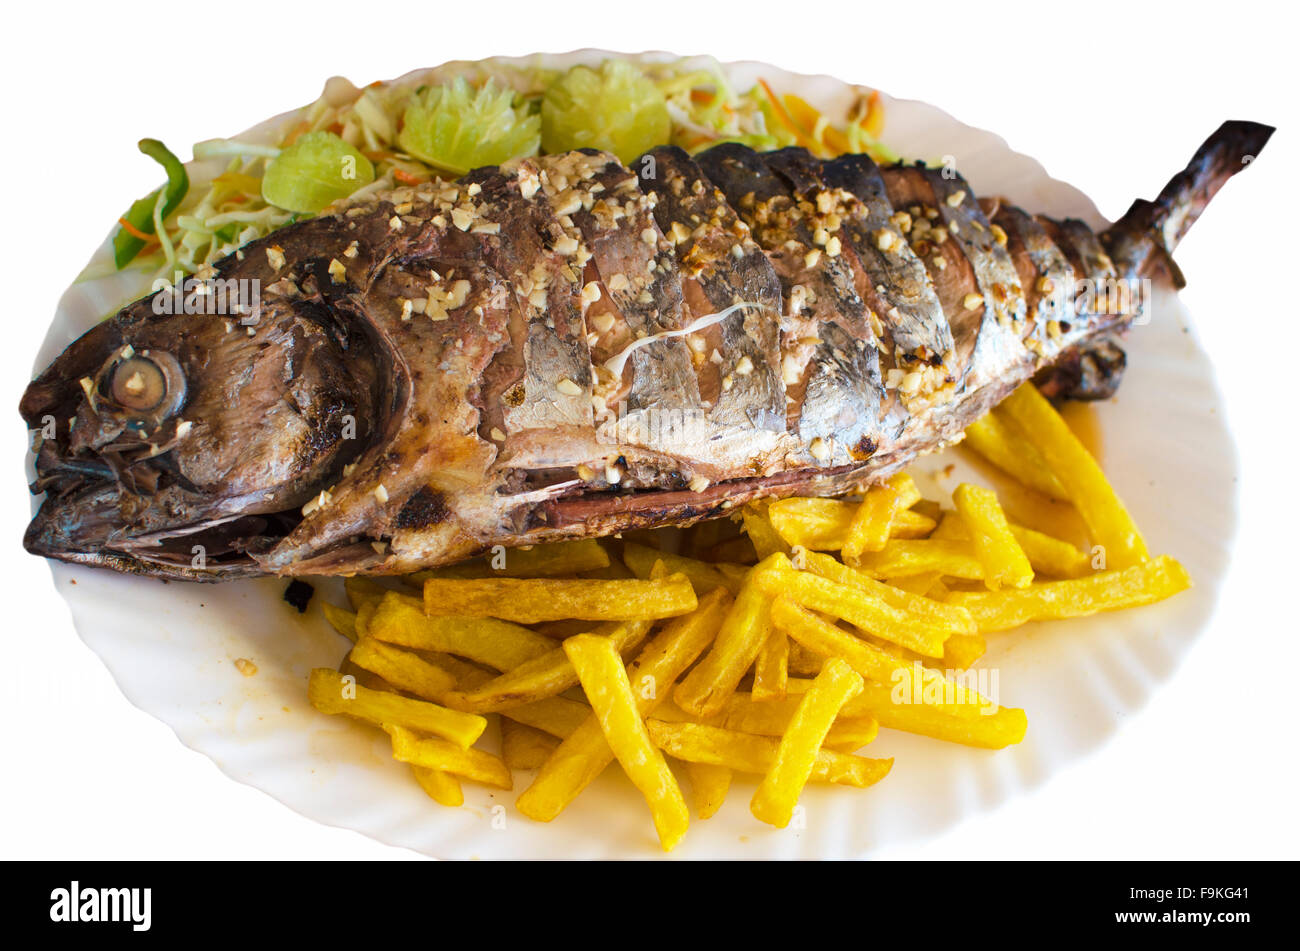 Fisch Gericht einen Thunfisch gebraten auf einem weißen Teller, Fisch, Thunfisch, auf einem weißen Teller, gebraten, Essen, Seefisch, ein Produkt, ein Gericht, Meeresfrüchte Stockfoto